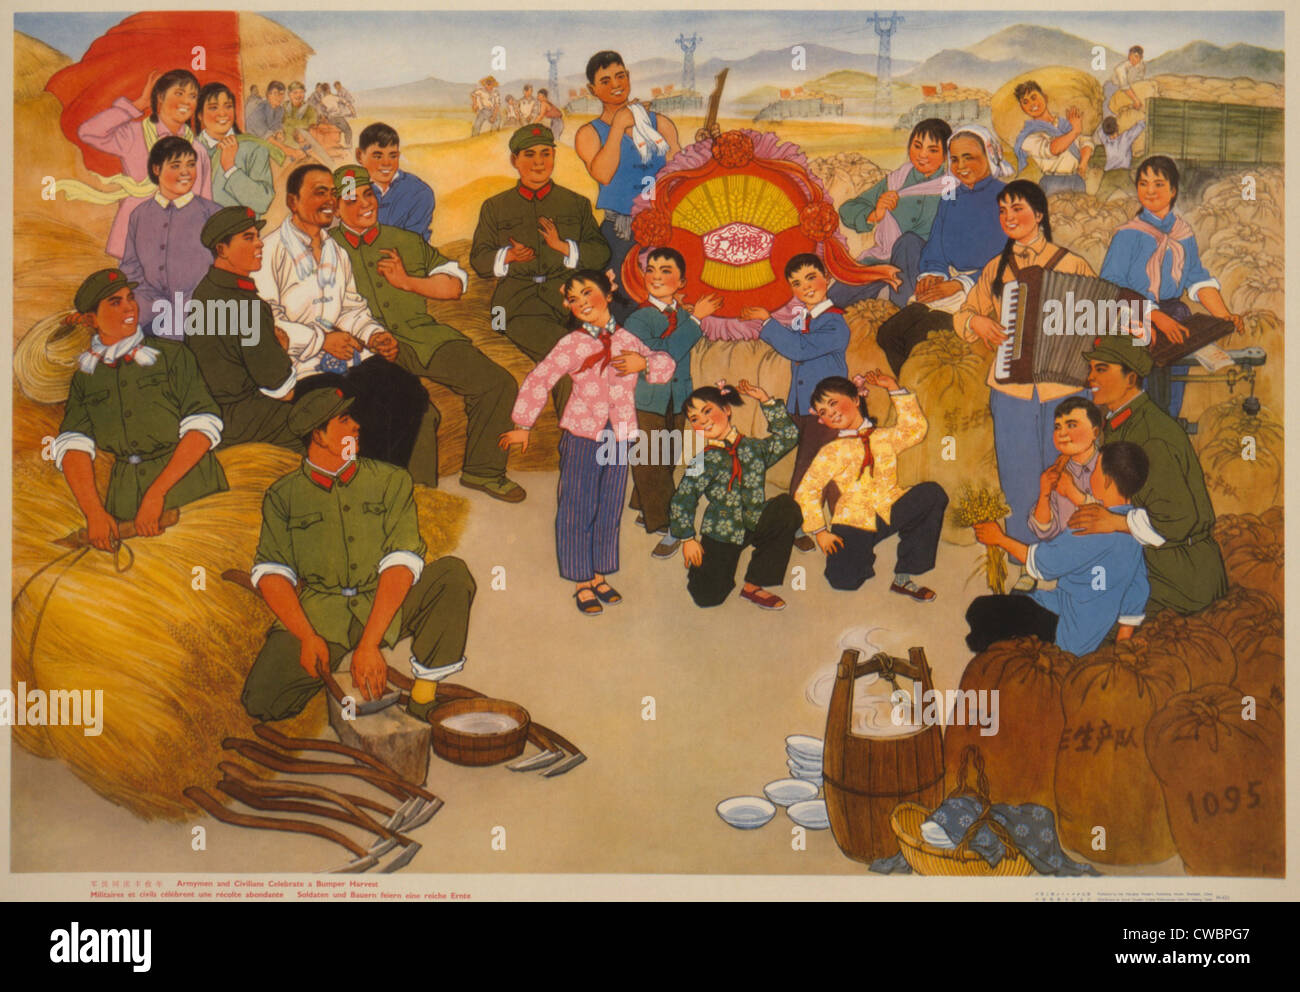 La Revolución Cultural china poster de hombres del ejército popular y civiles celebrando una cosecha de grano. Ca. 1970. Foto de stock